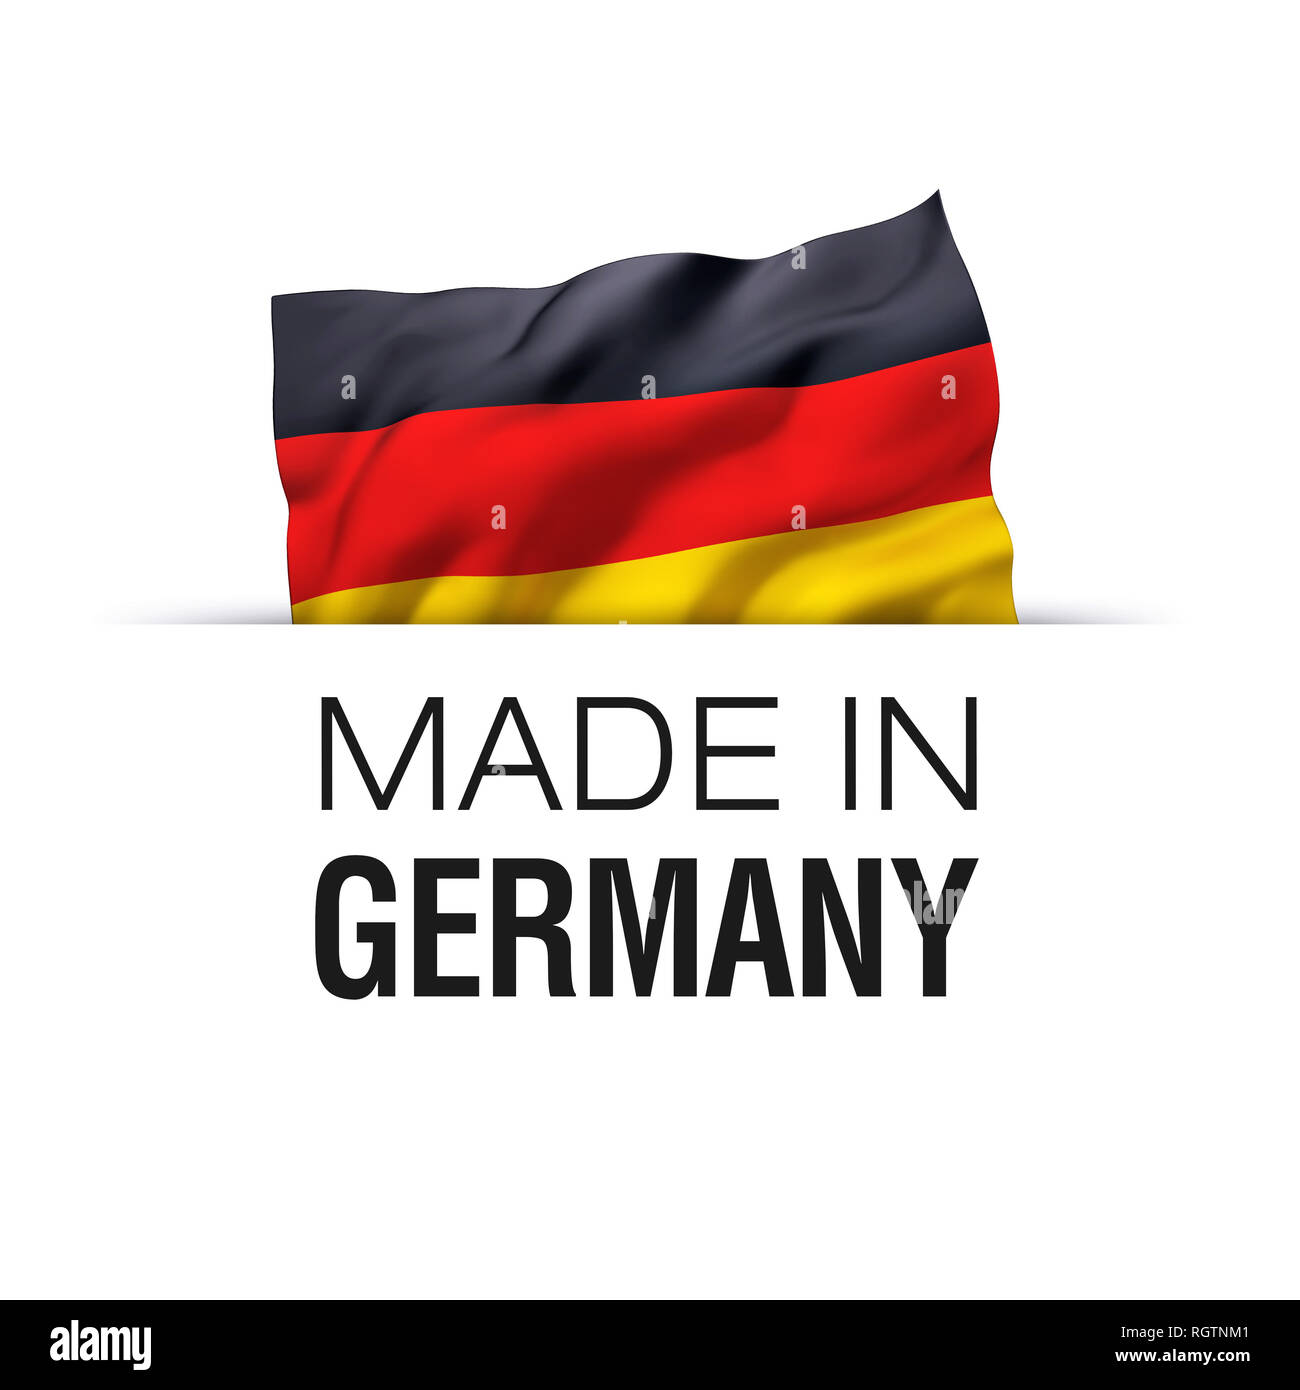 Realizzato in Germania - etichetta di garanzia con una sventola bandiera tedesca. Foto Stock